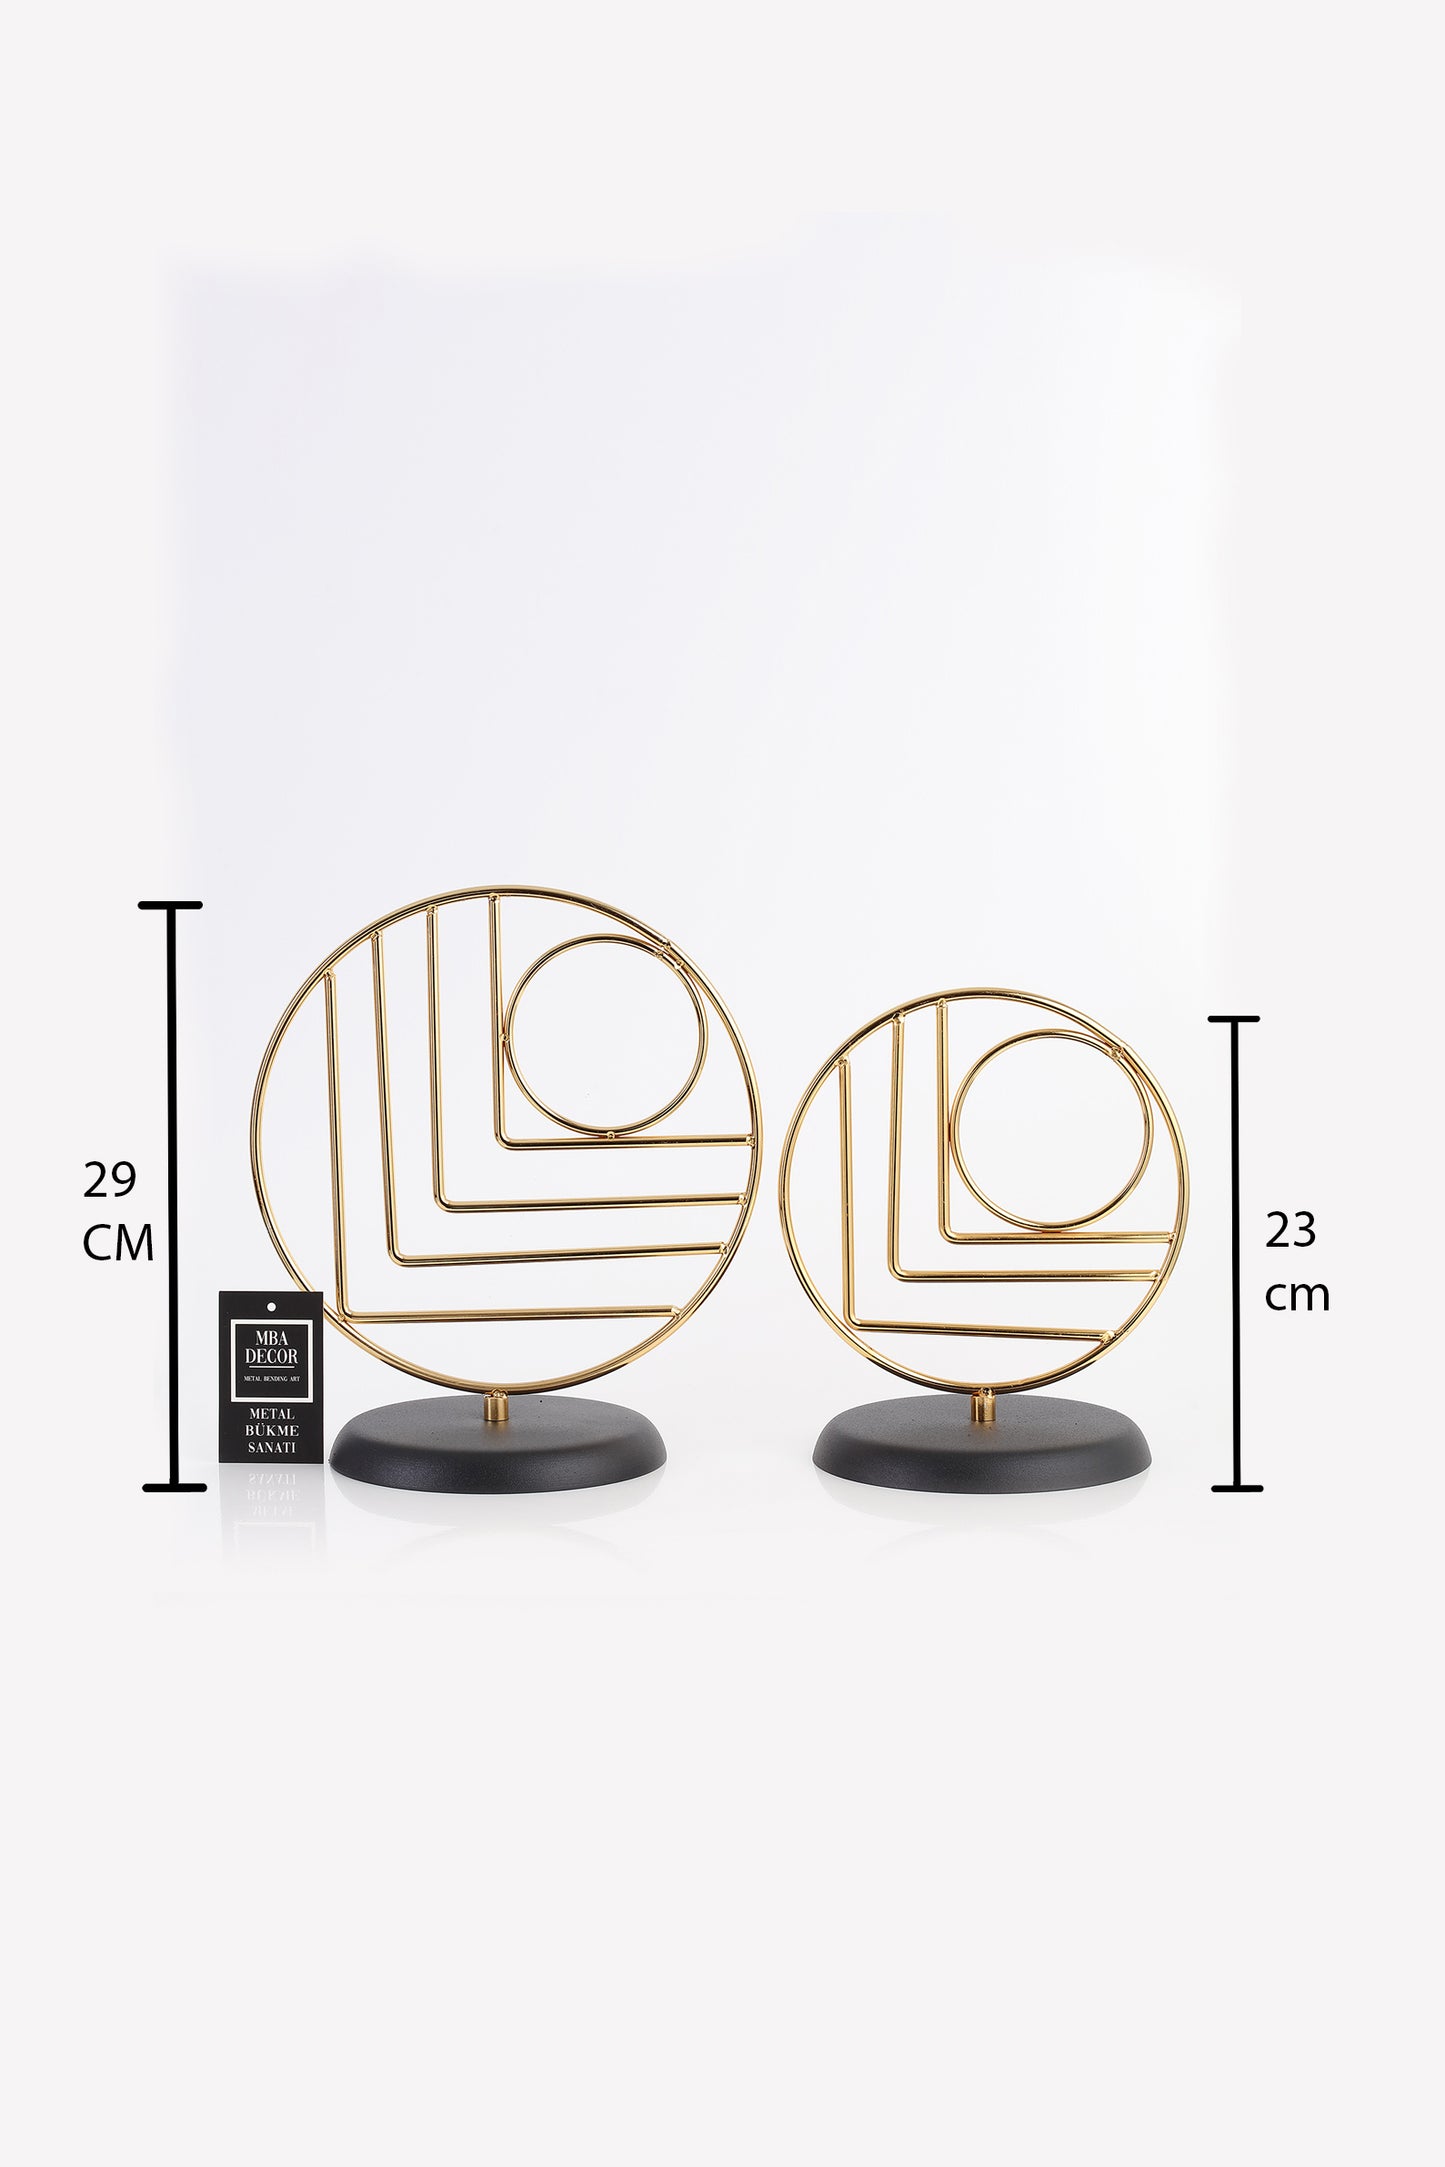 İkili Gold Dekoratif Obje Yılbaşı Dekorasyon Ofis Konsol Zigon Sehpa Üstü Paslanmaz Metal Romantisme